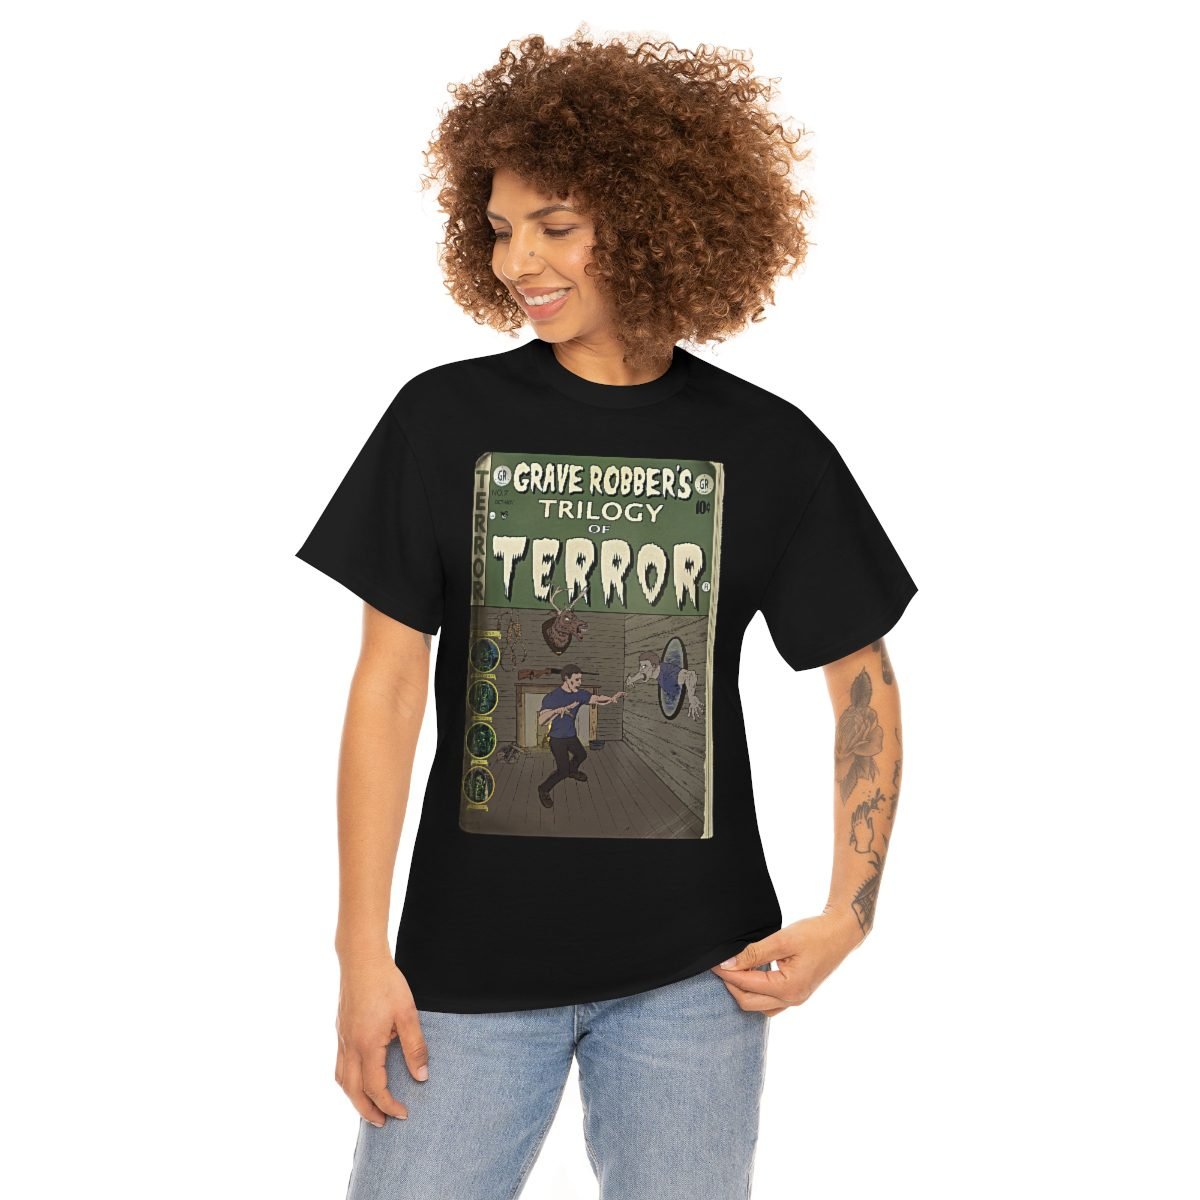 Grave Robber – Evil Dead Short Sleeve Tshirt (5000)